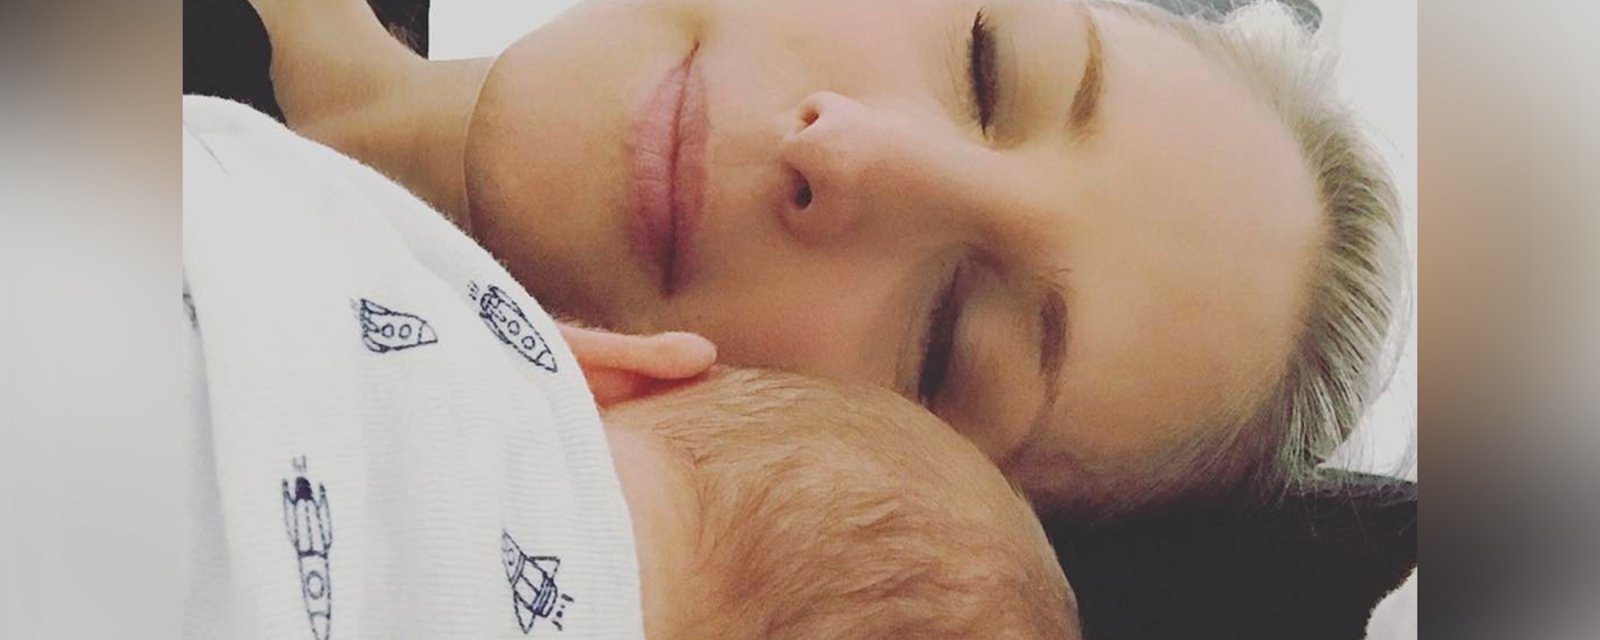 Mahée Paiement fait un malheur en publiant cette photo de son chum et son bébé